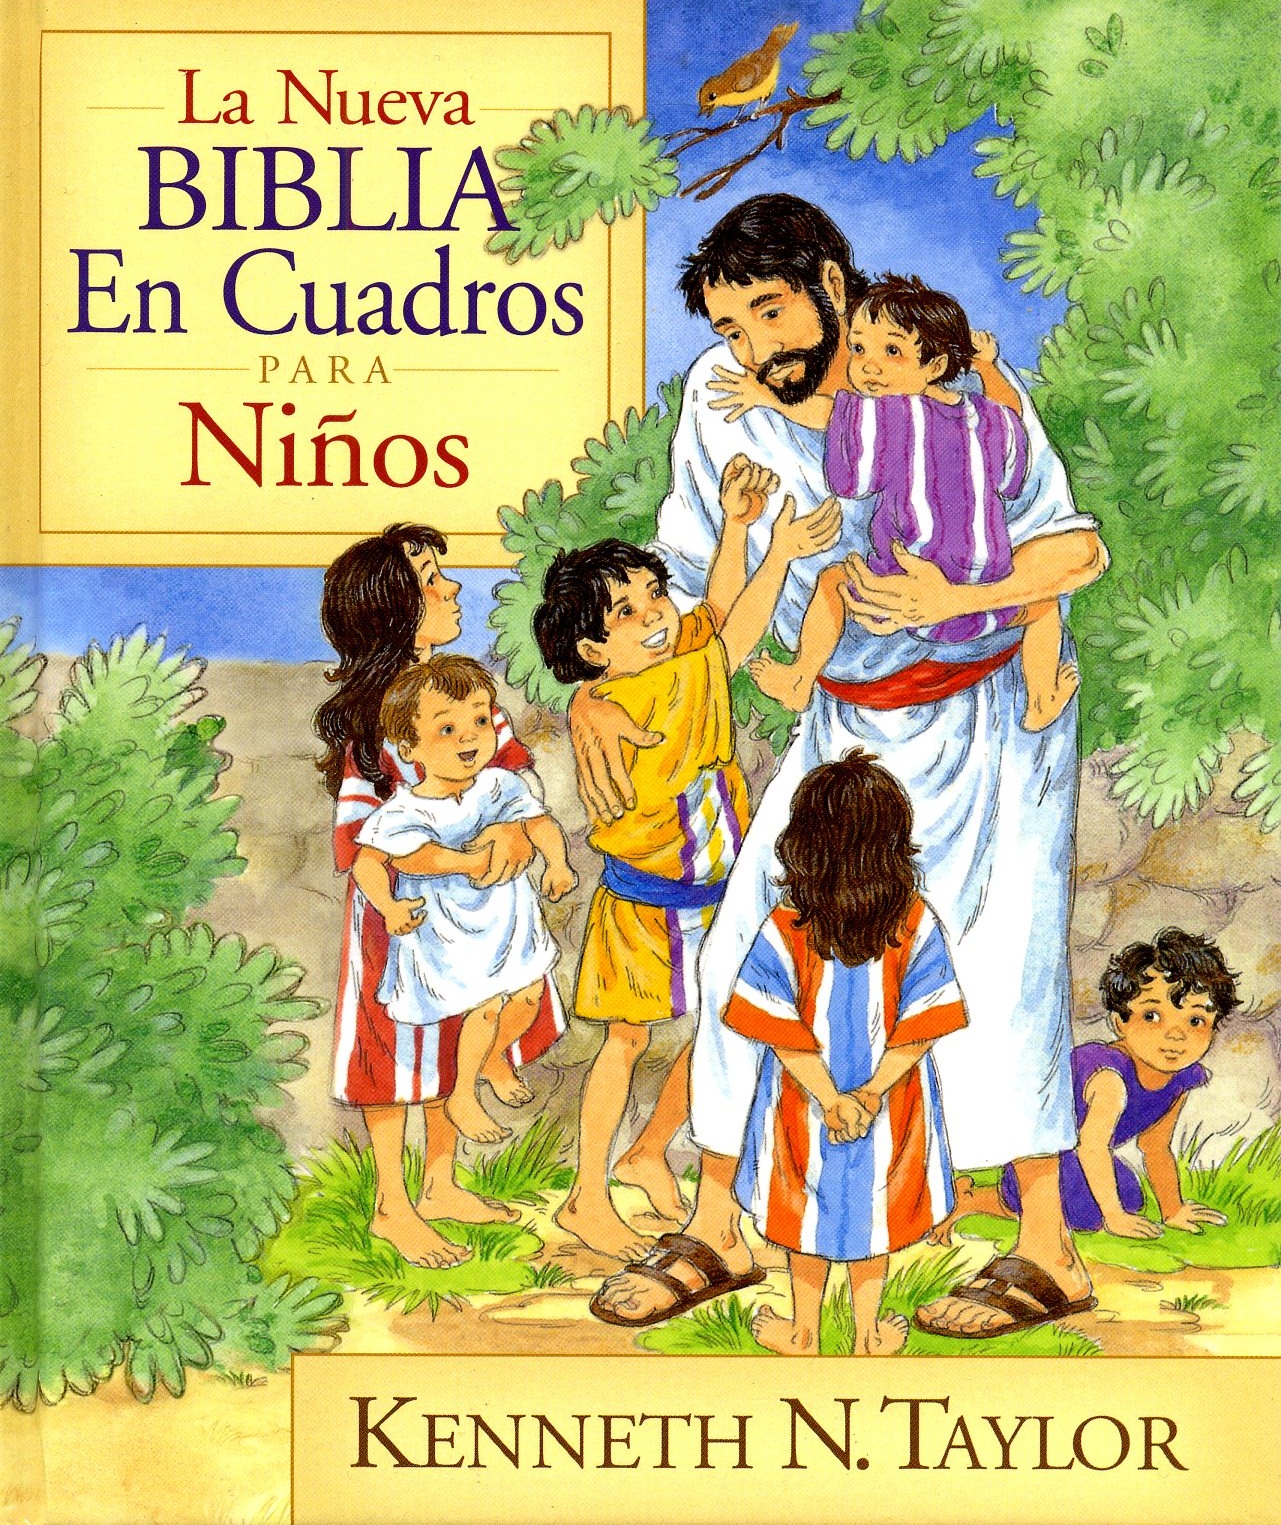 La nueva biblia de cuadros para niños